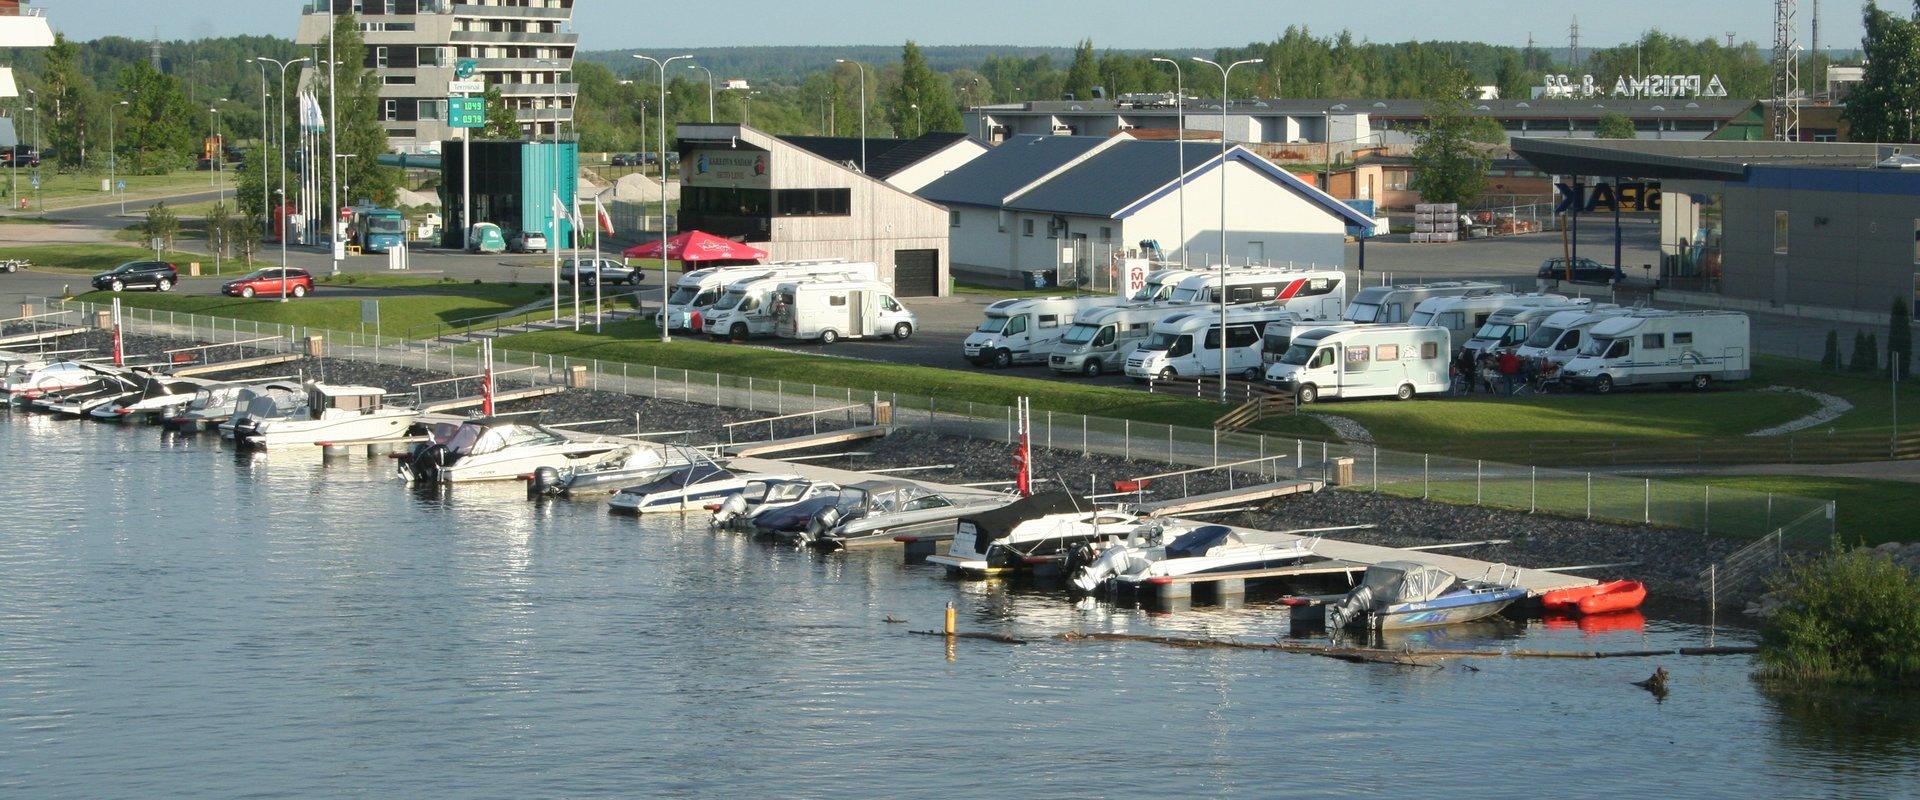 Tartu Karlova Harbour’s caravan park, view of River Emajõgi, boats and a caravan